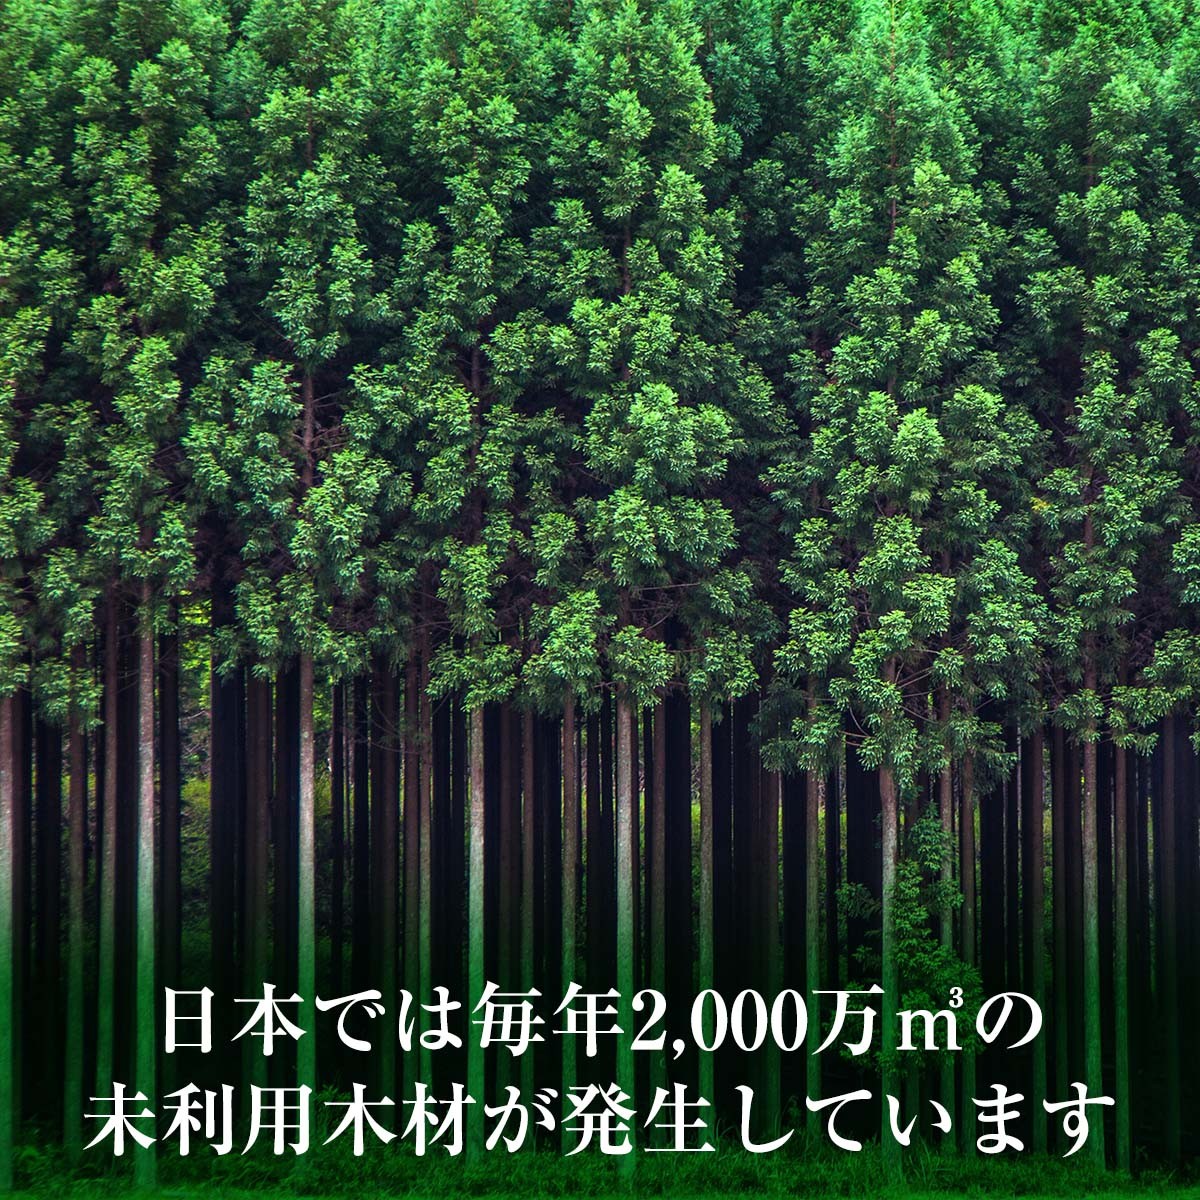 日本では毎年2000万立方メートルの未利用木材が発生しています